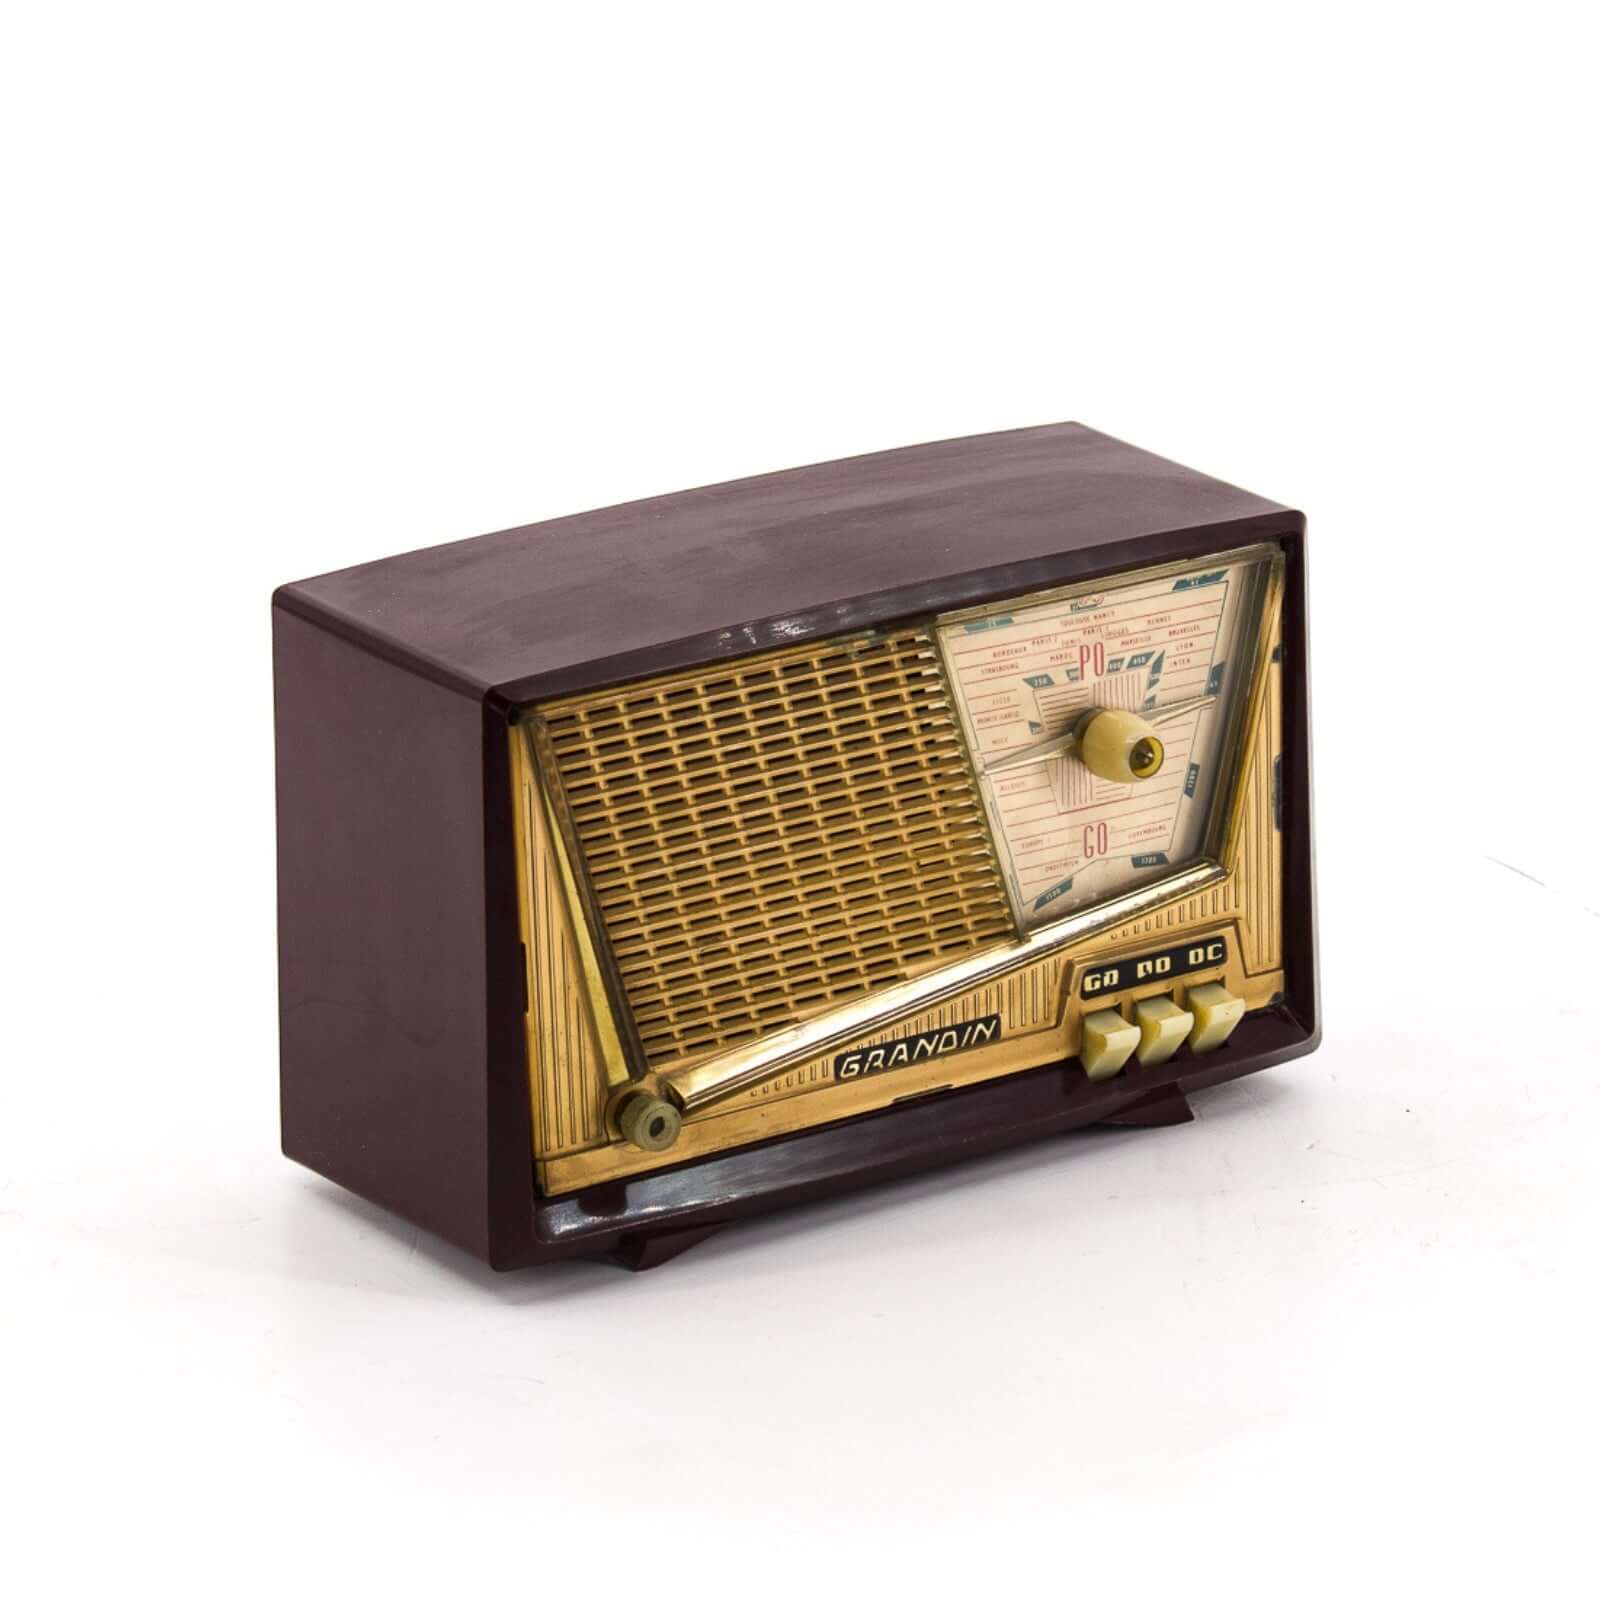 Radio Bluetooth Cristal Grandin Vintage 60's enceinte connectée française haut de gamme prodige radio vintage